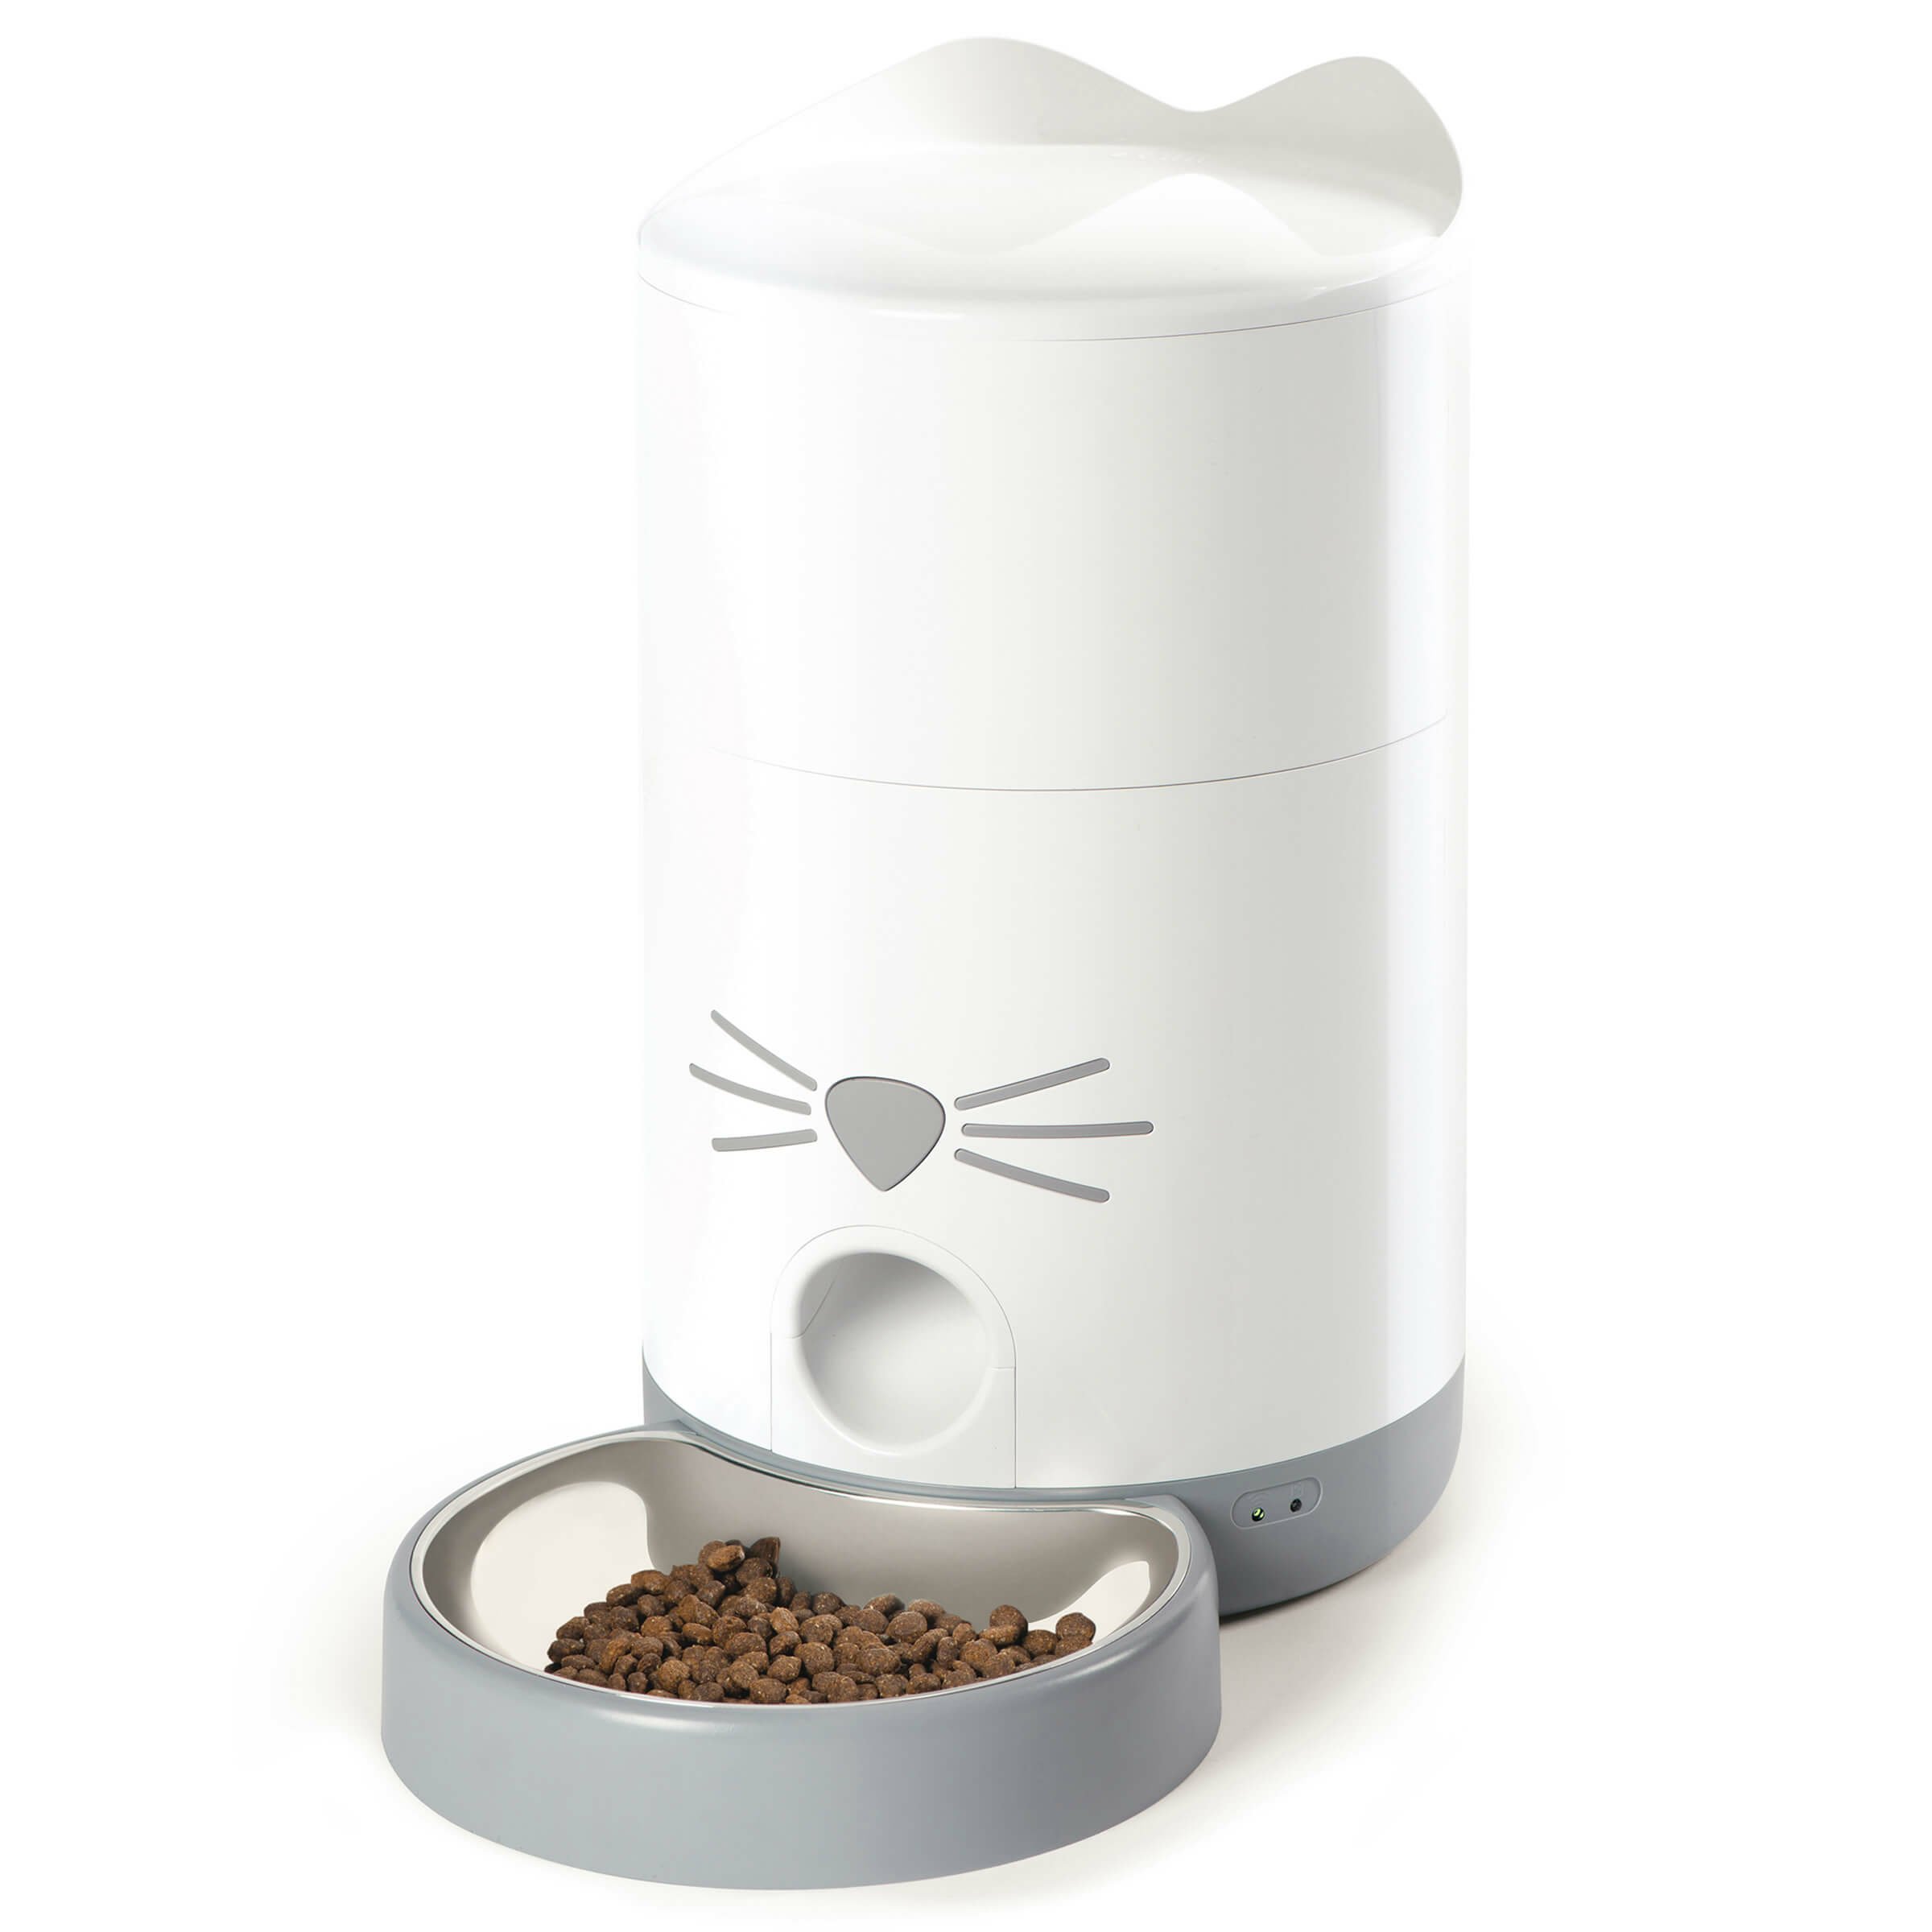 Catit Futterautomat Pixi Smart Feeder für Katzen ab CHF 149.90 online kaufen